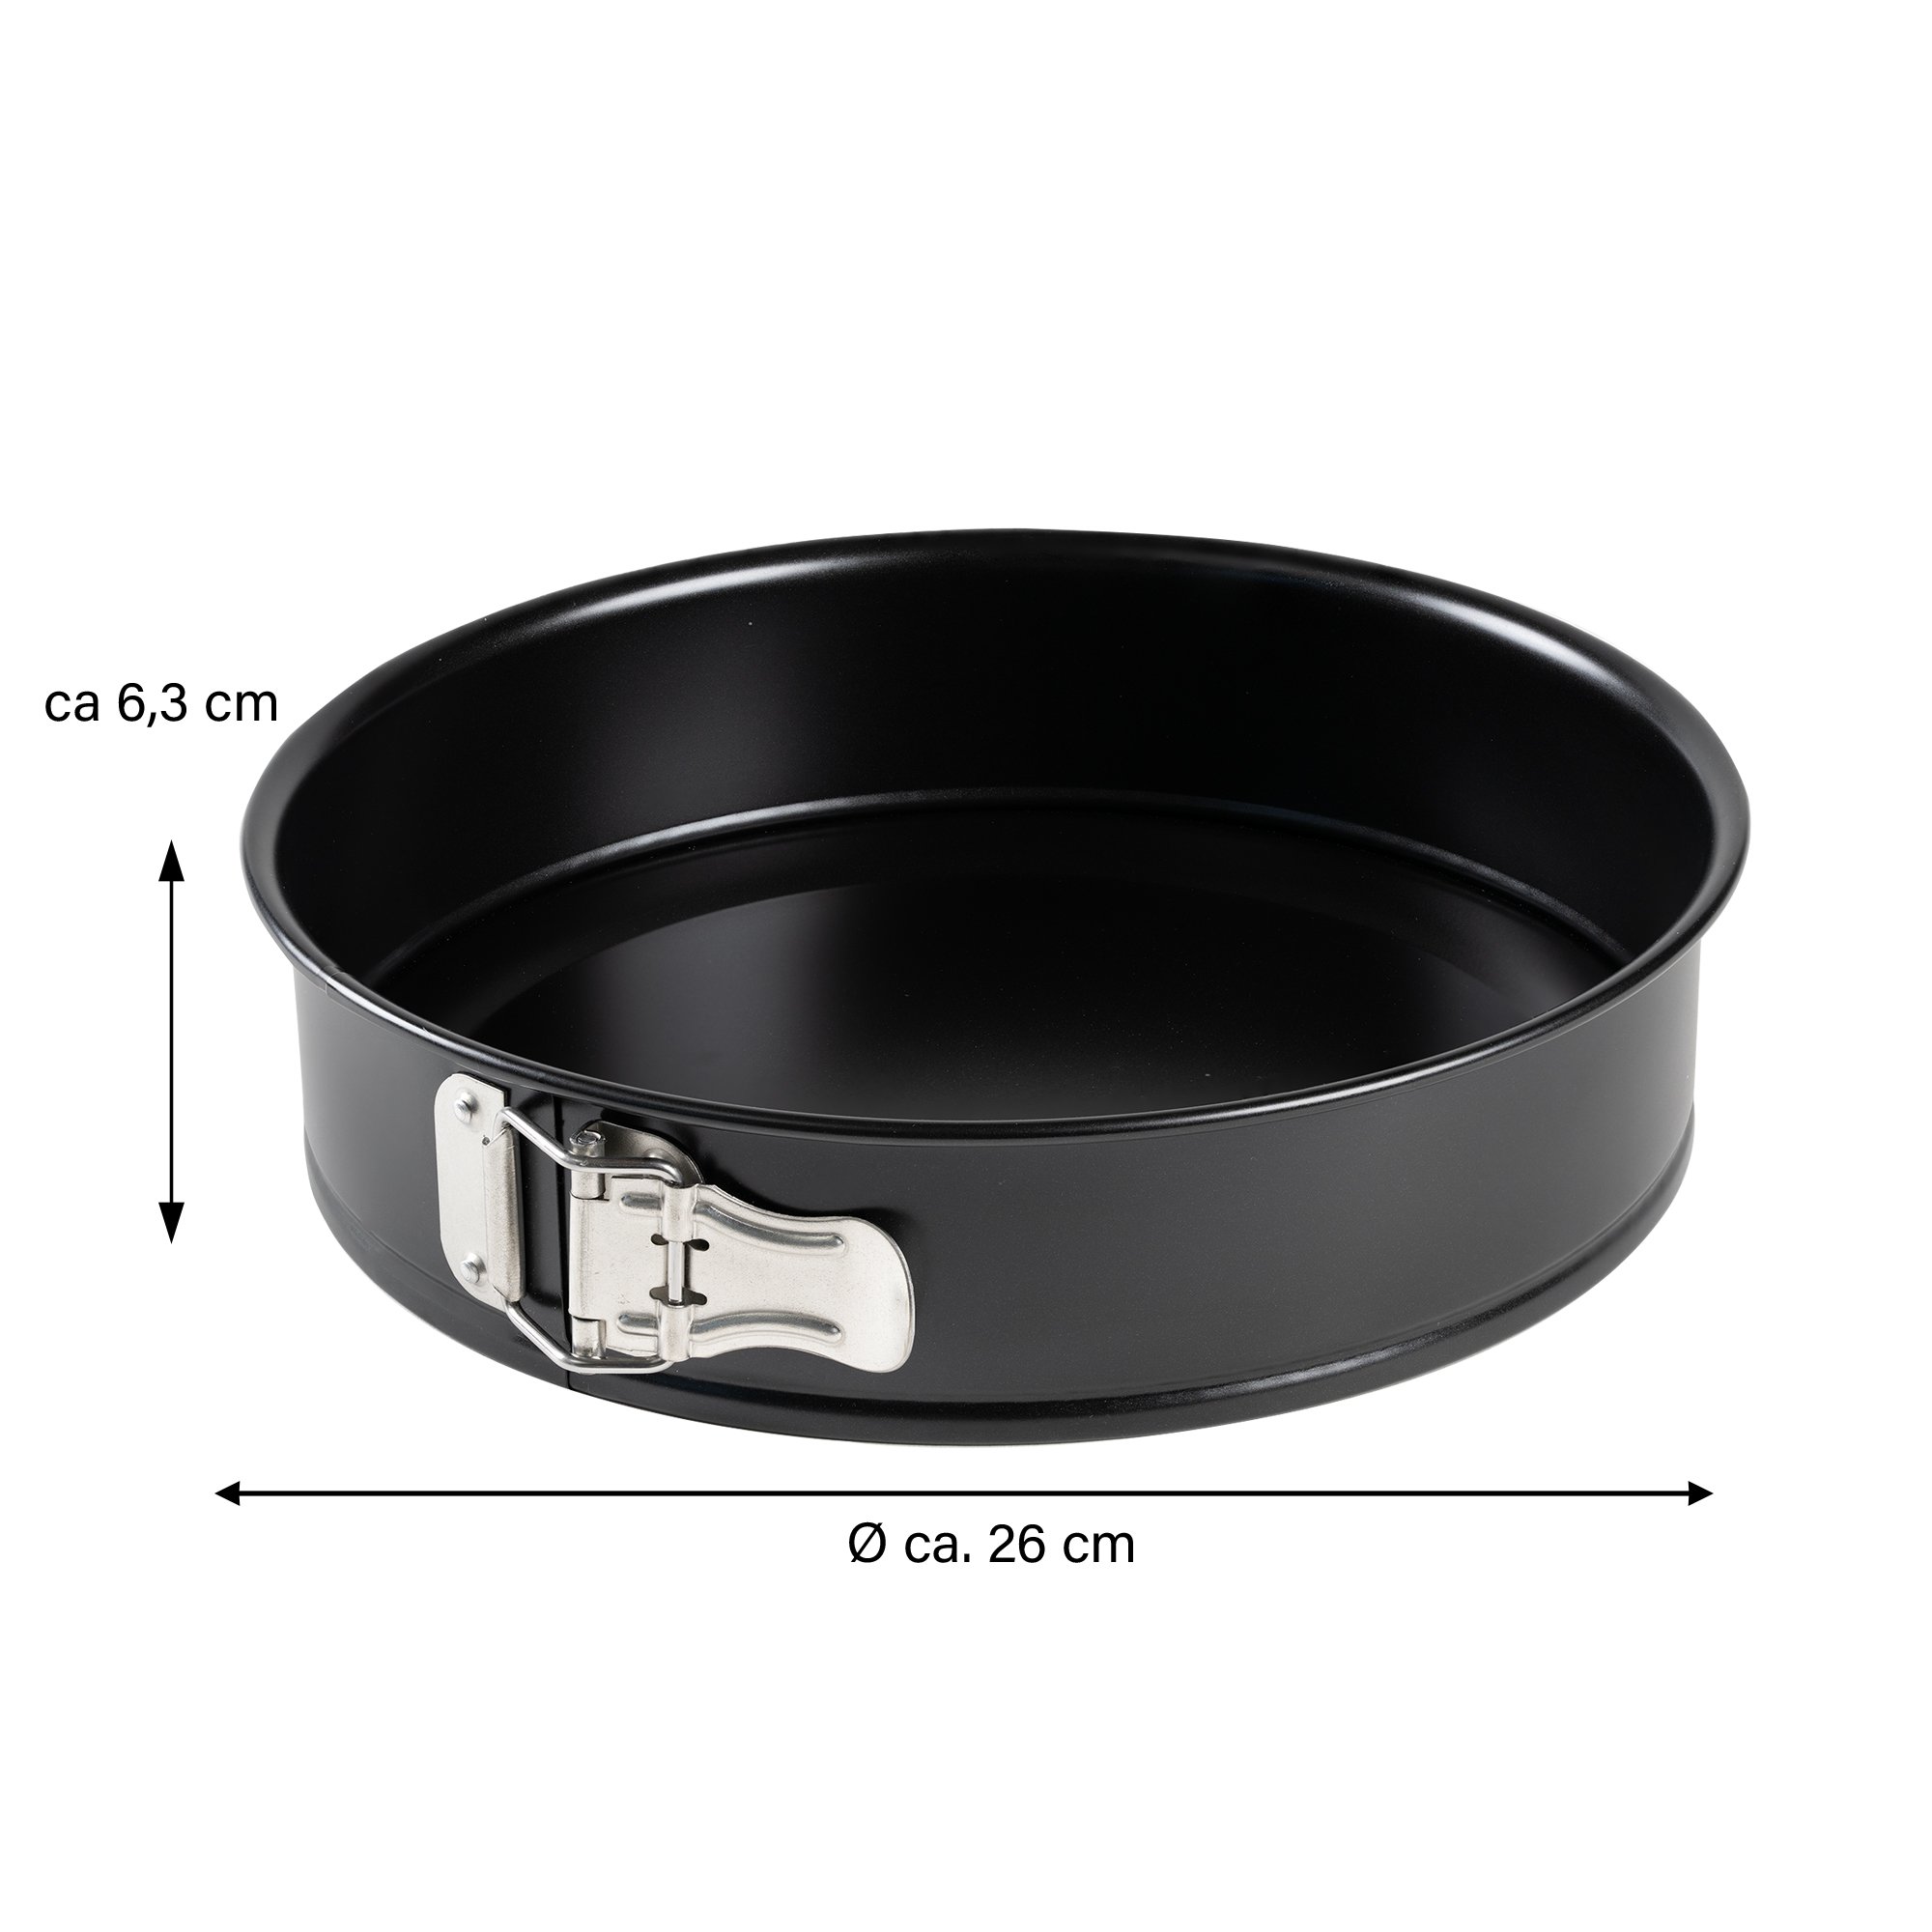 Freyersbacher® Springform Pan 26 cm, Round Cake Tin | Loose Base, Non-Stick